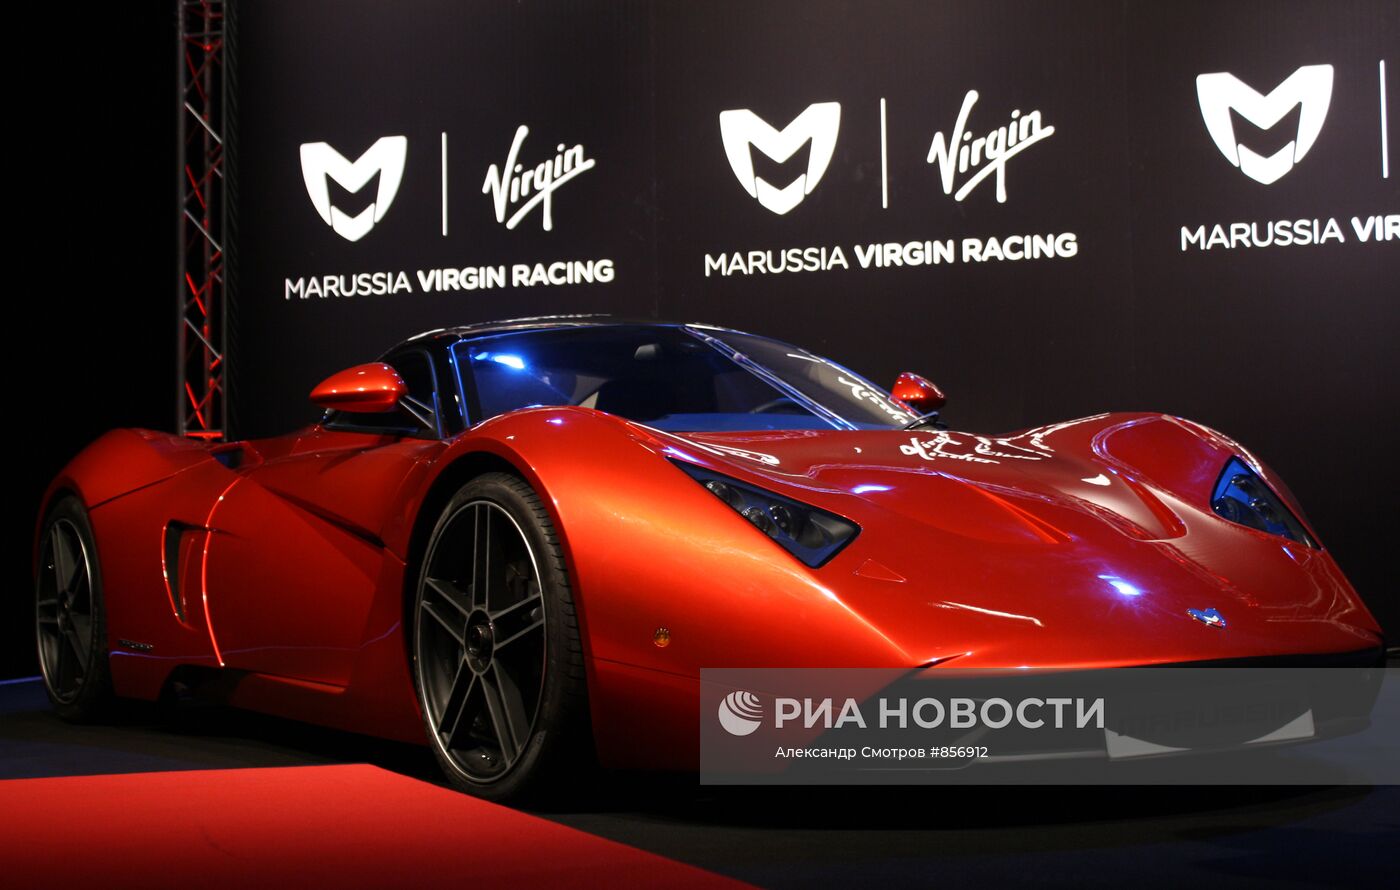 Автоспорт. Презентация болида команды Marussia Virgin Racing